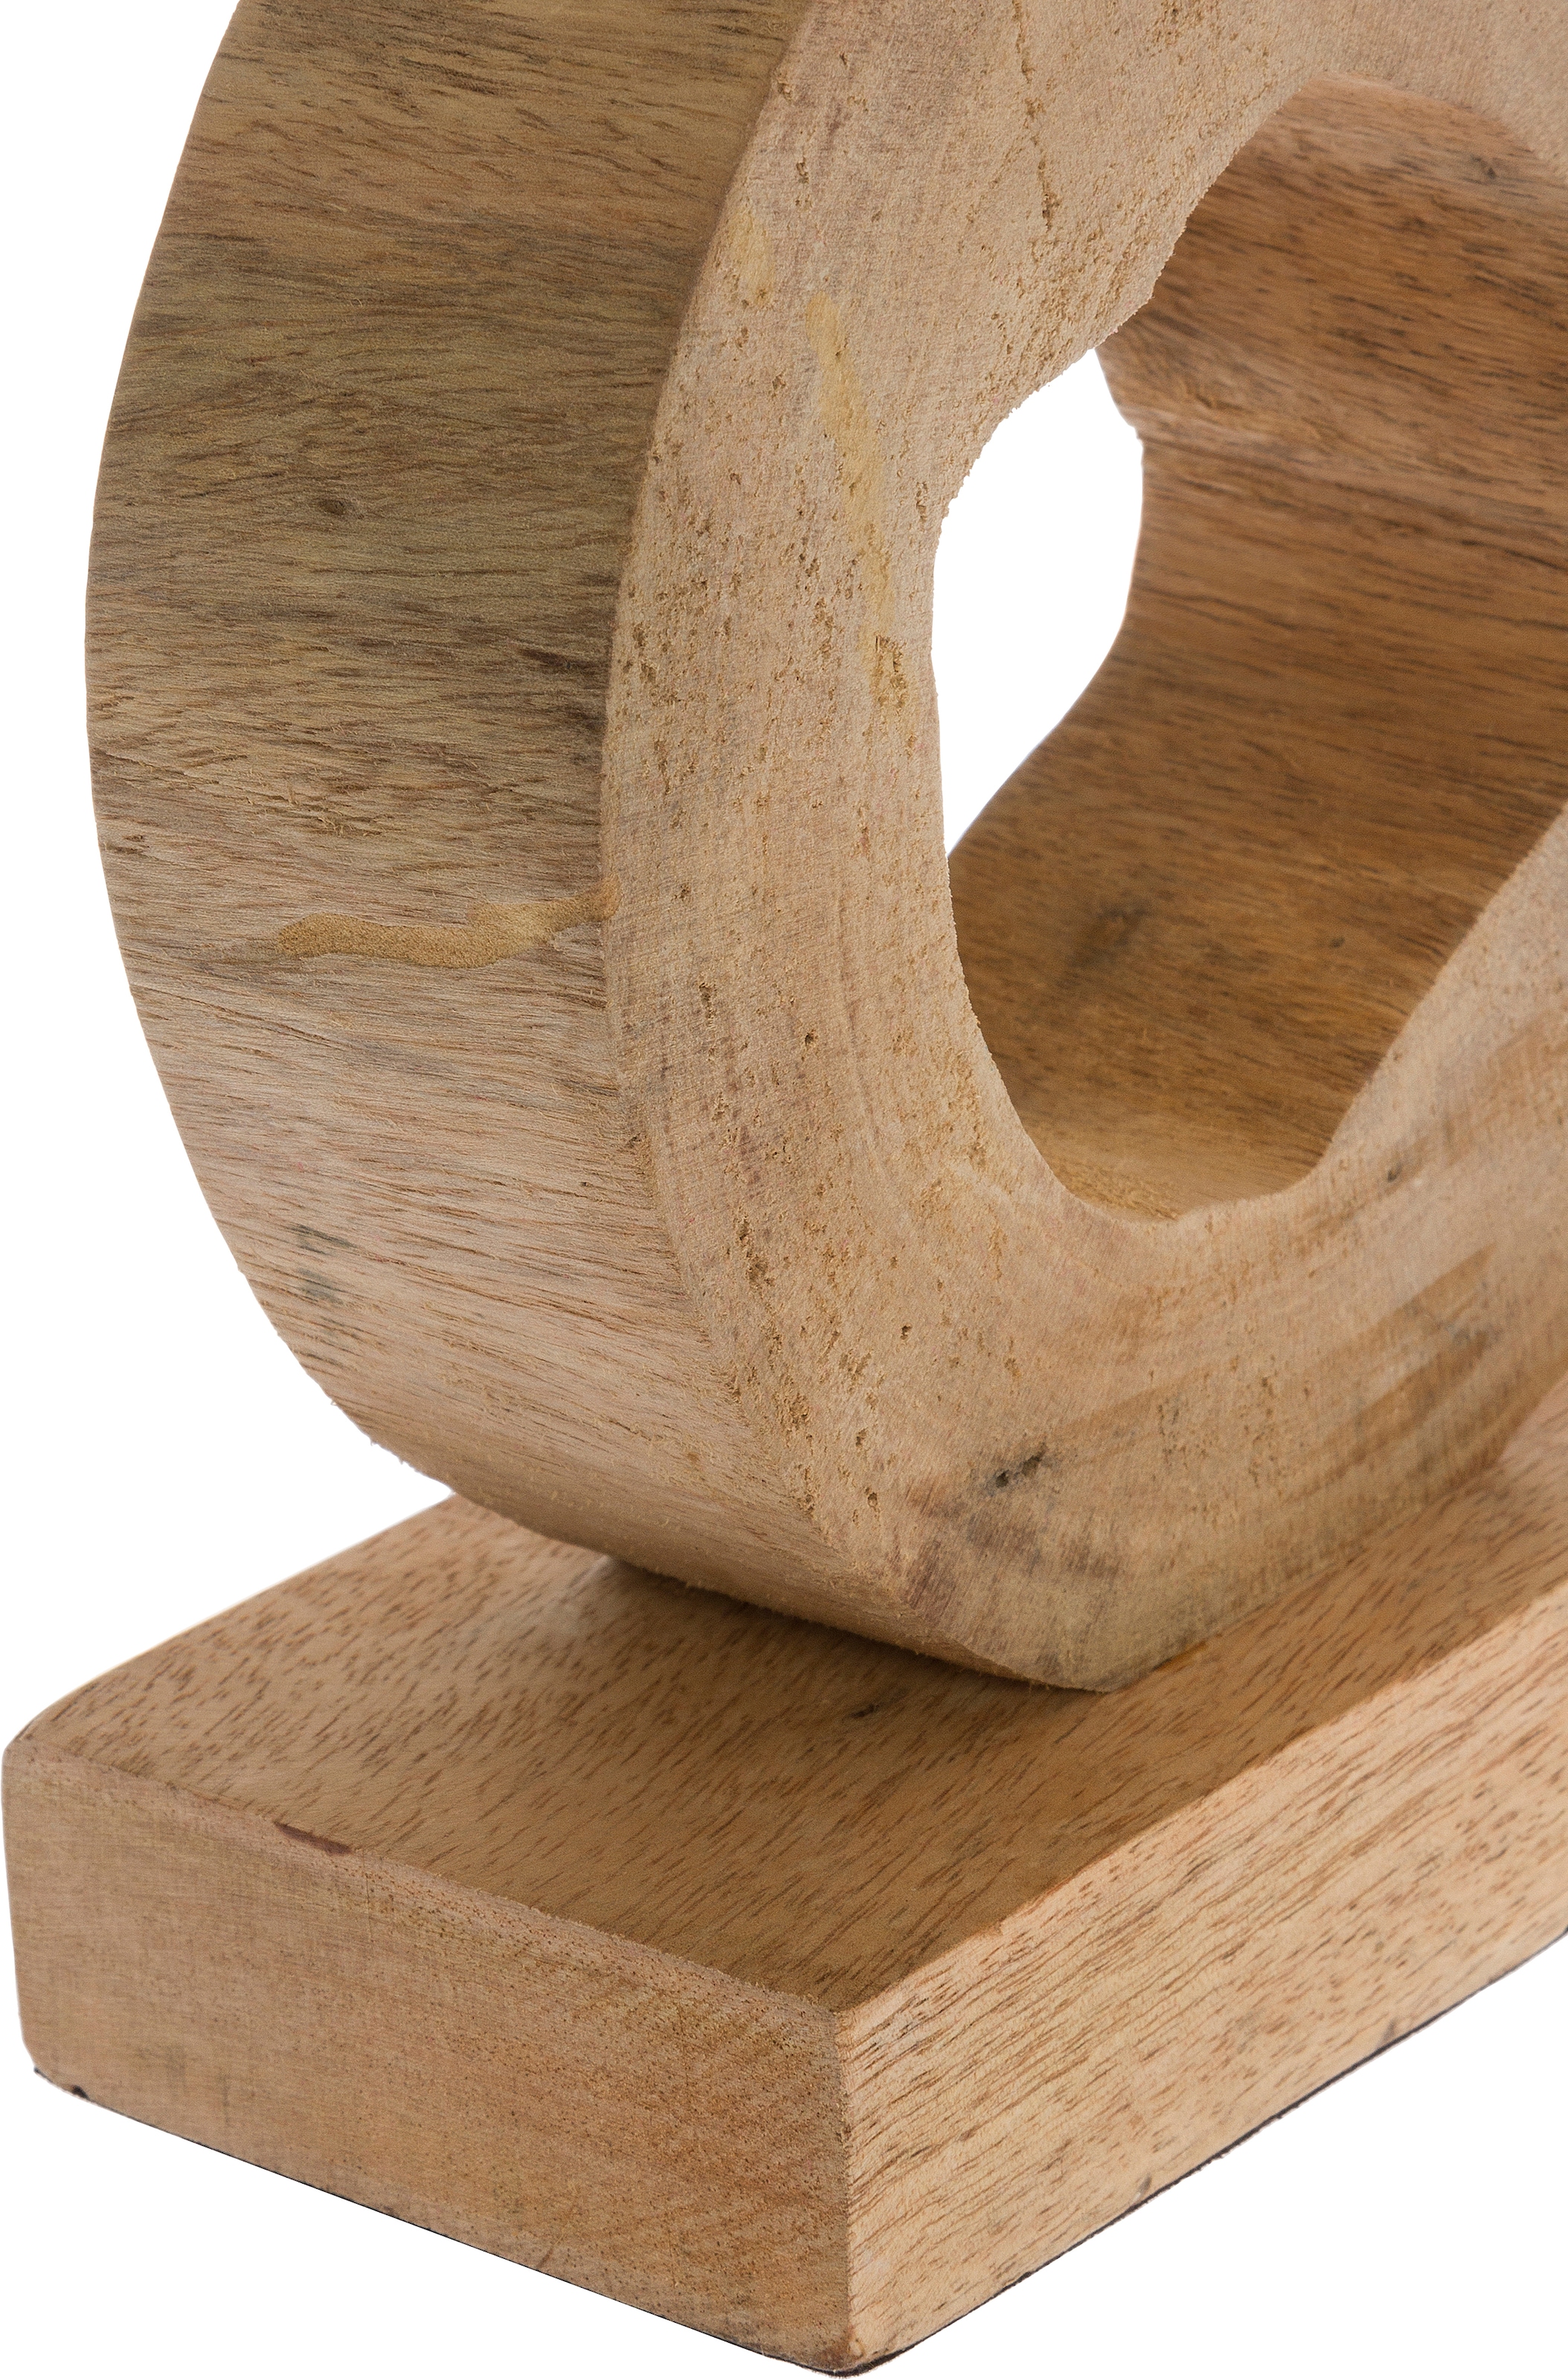 Myflair Möbel & Accessoires Dekoobjekt, Skulptur, natur, Höhe 32 cm, aus Holz, Vogel auf Ring, Wohnzimmer